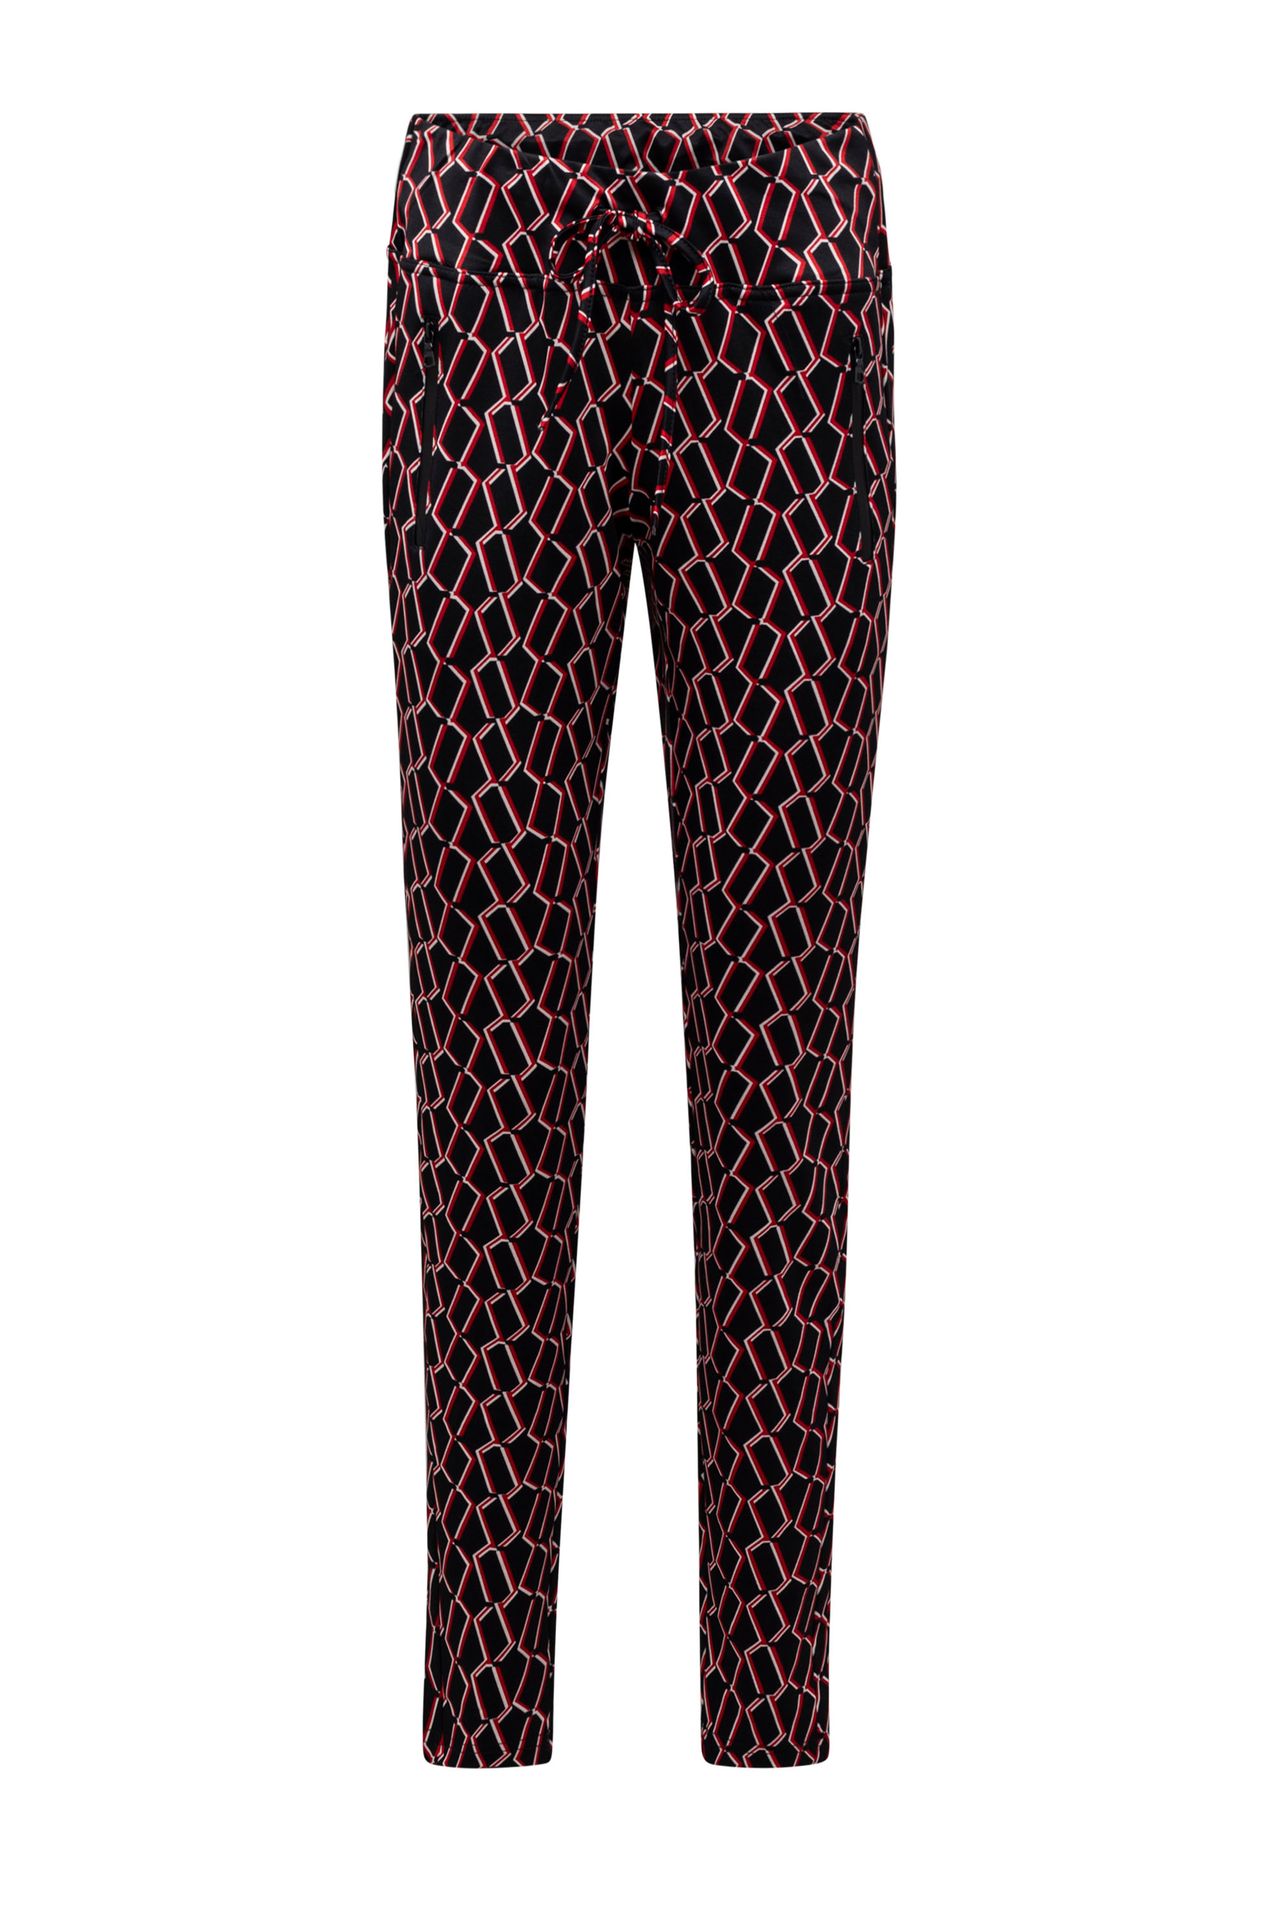 Norah Zwarte elastische broek met patroon black multicolor 212164-020